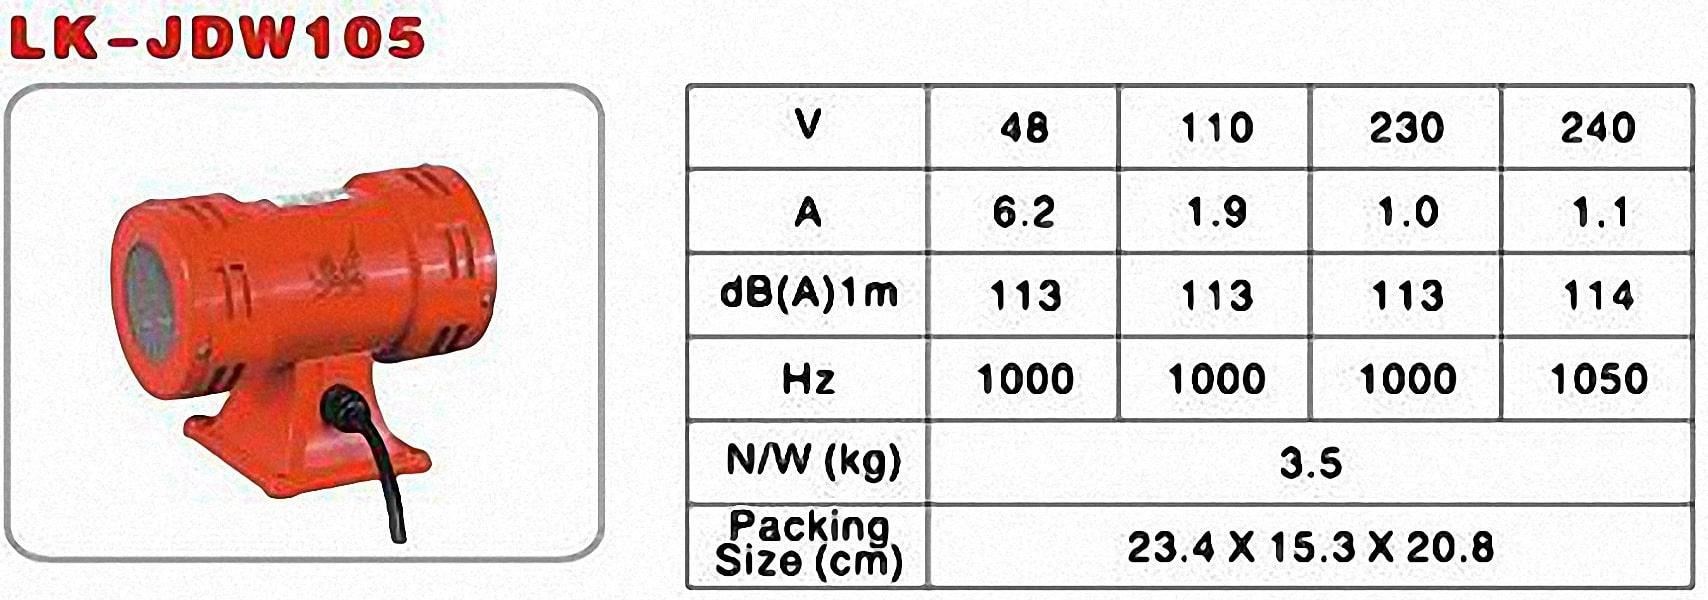 Thông số của còi hú LK-JDW105